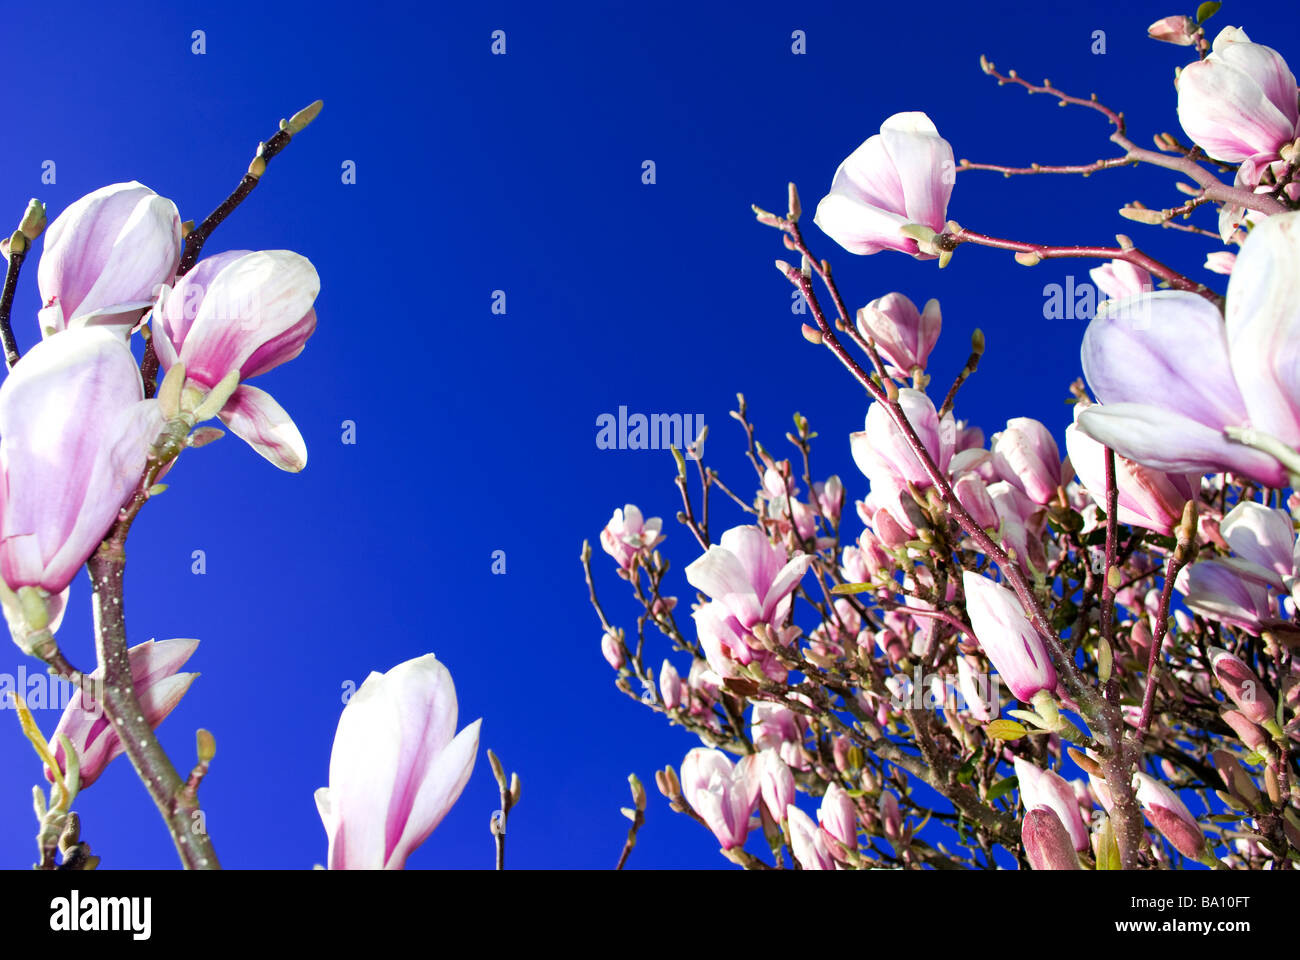 Albero di magnolia in fiore fioritura magnolia blue sky di intorbidimento oltre a partire dalla primavera per la stagione estiva il termine prossimi al terminale 2 Foto Stock